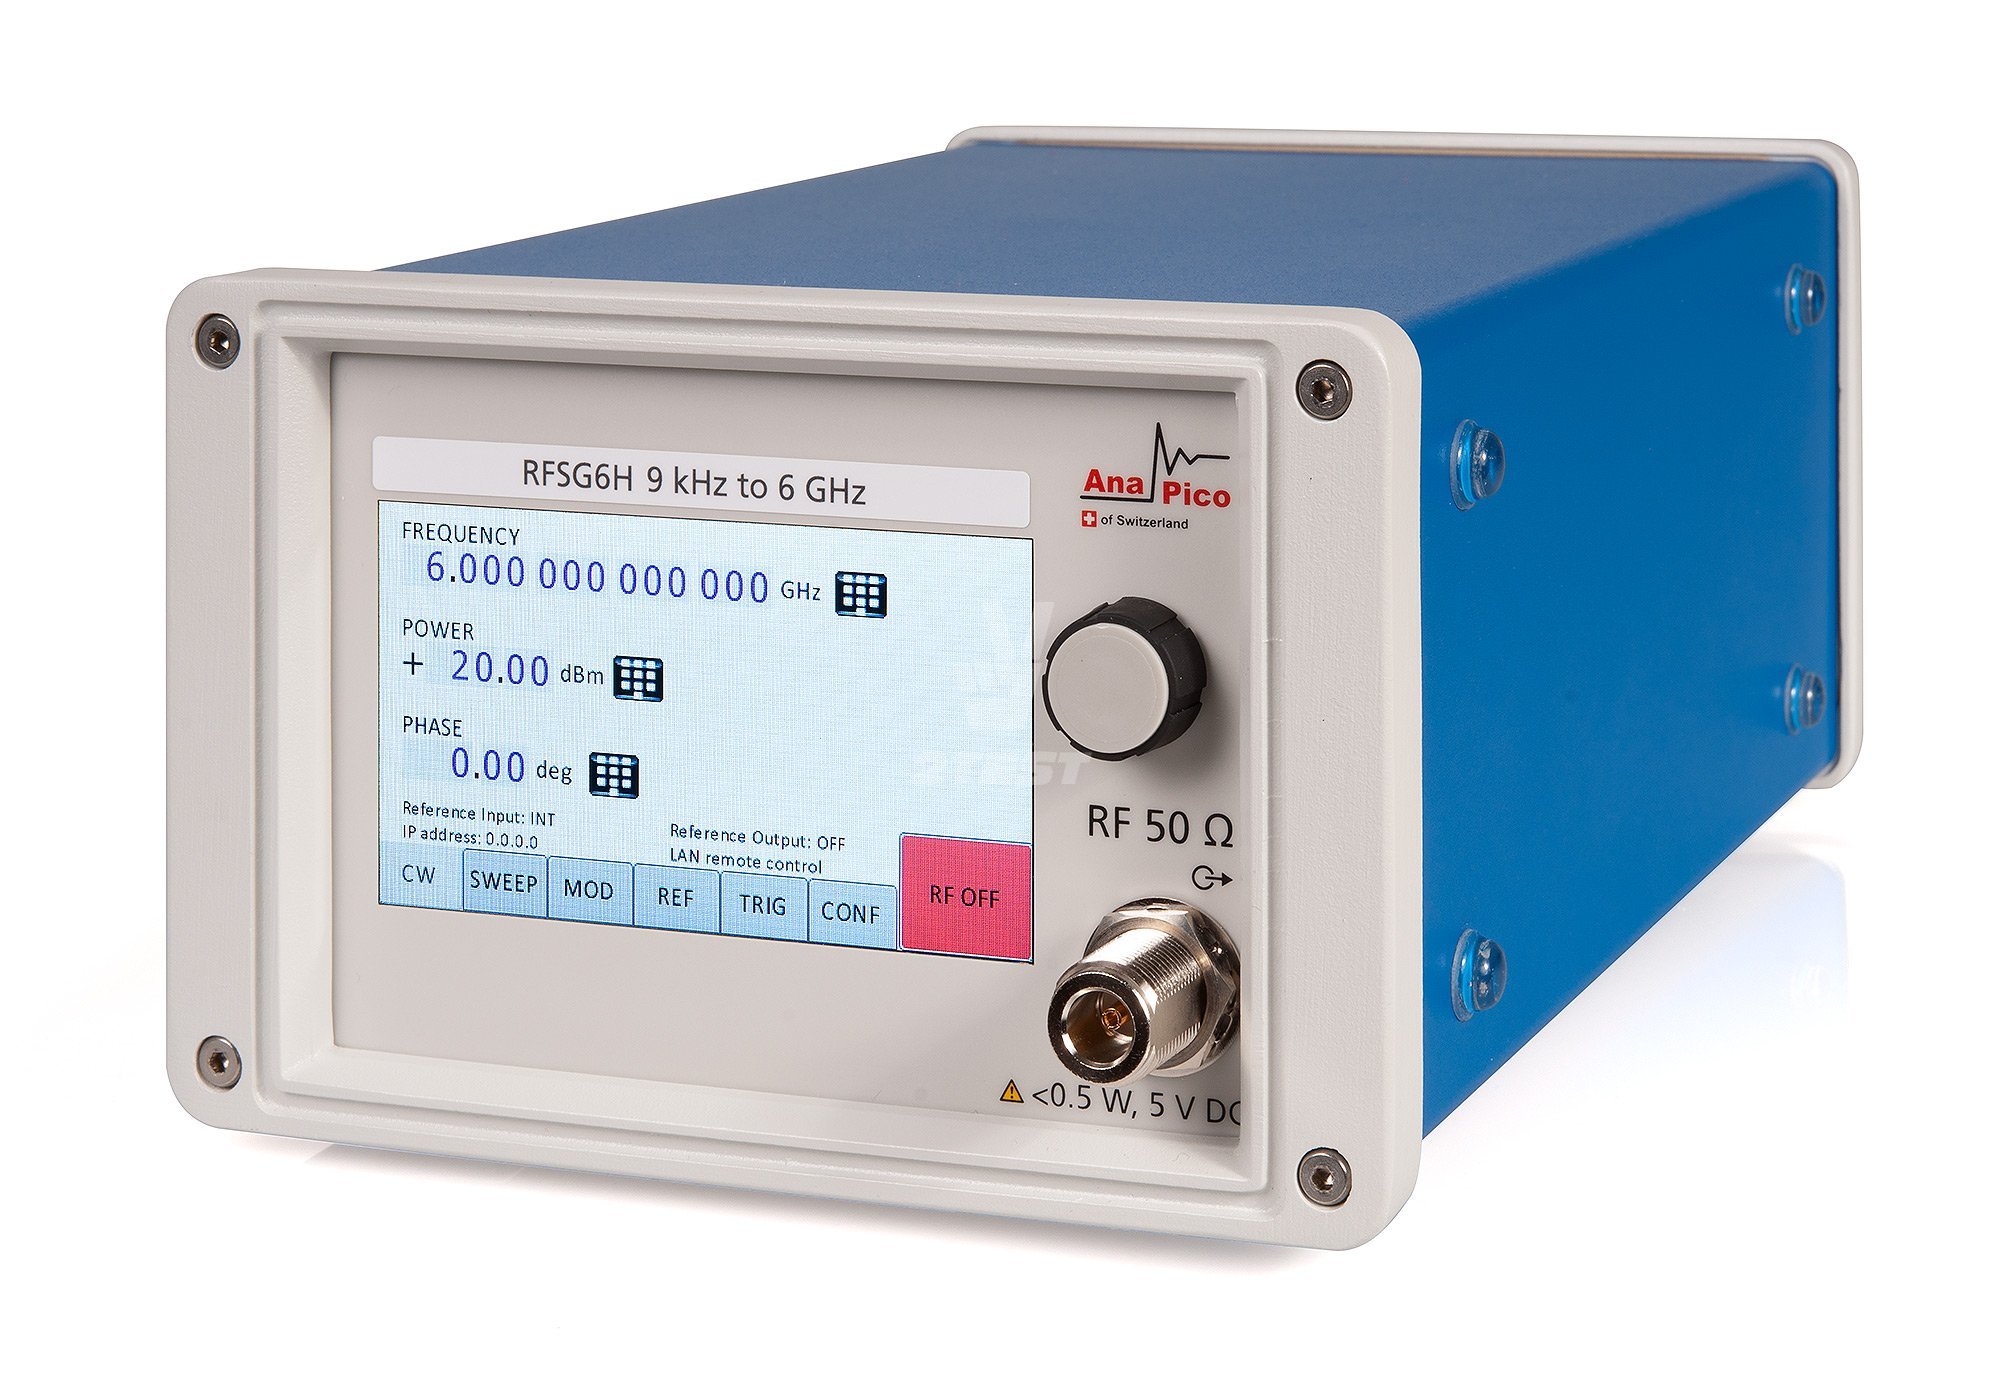 Купить Генератор сигналов высокой мощности AnaPico RFSG6H с диапазоном частот от 9 кГц до 6 ГГц